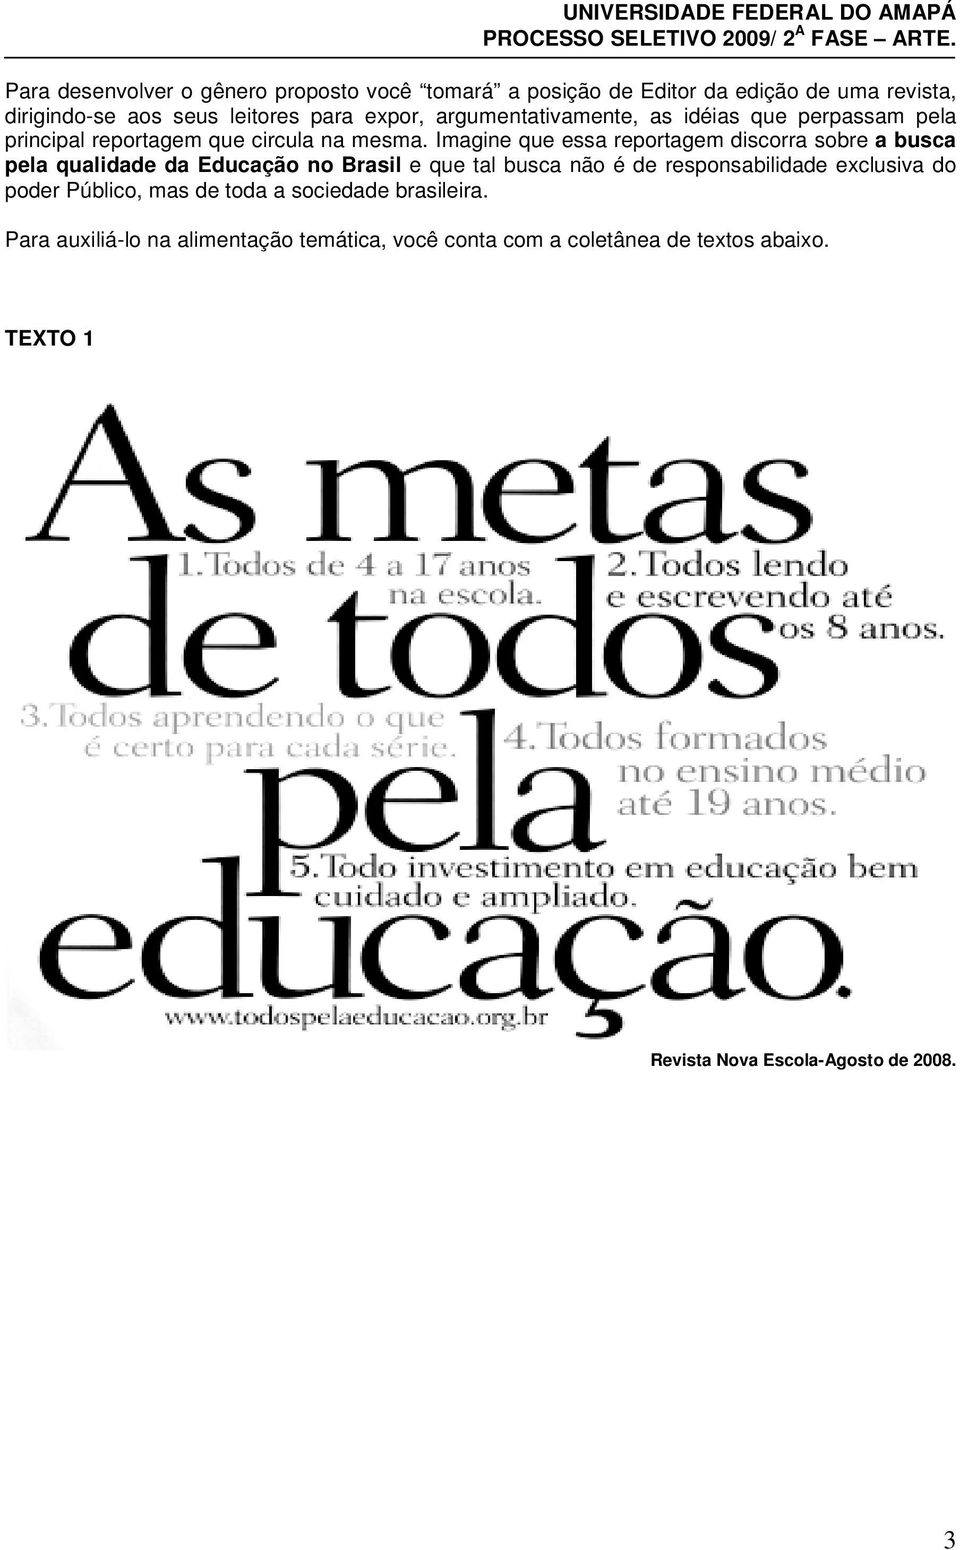 Imagine que essa reportagem discorra sobre a busca pela qualidade da Educação no Brasil e que tal busca não é de responsabilidade